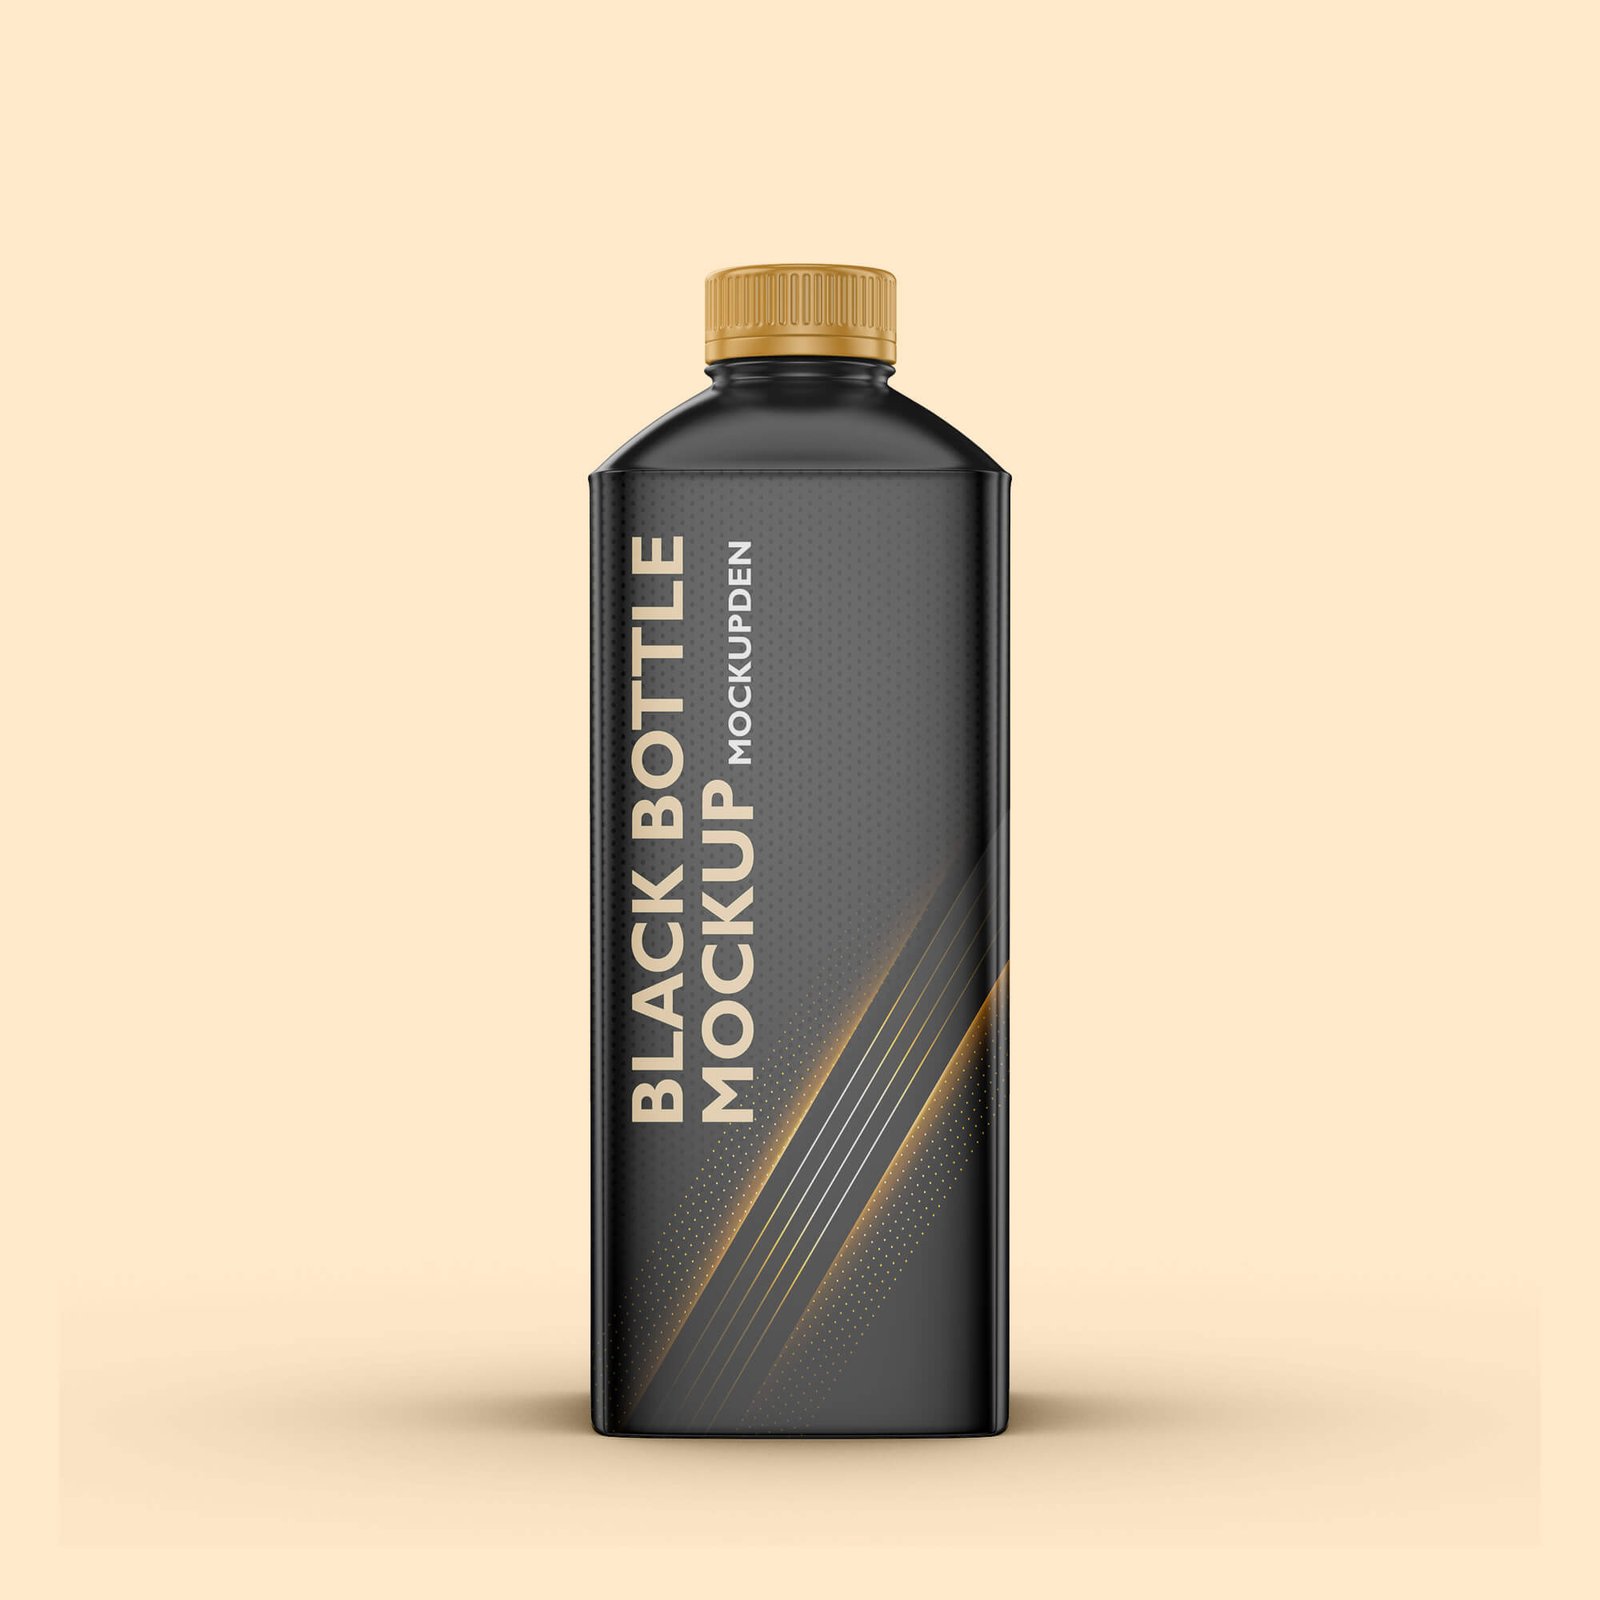 Design Free Black Bottle Mockup PSD Template (1)